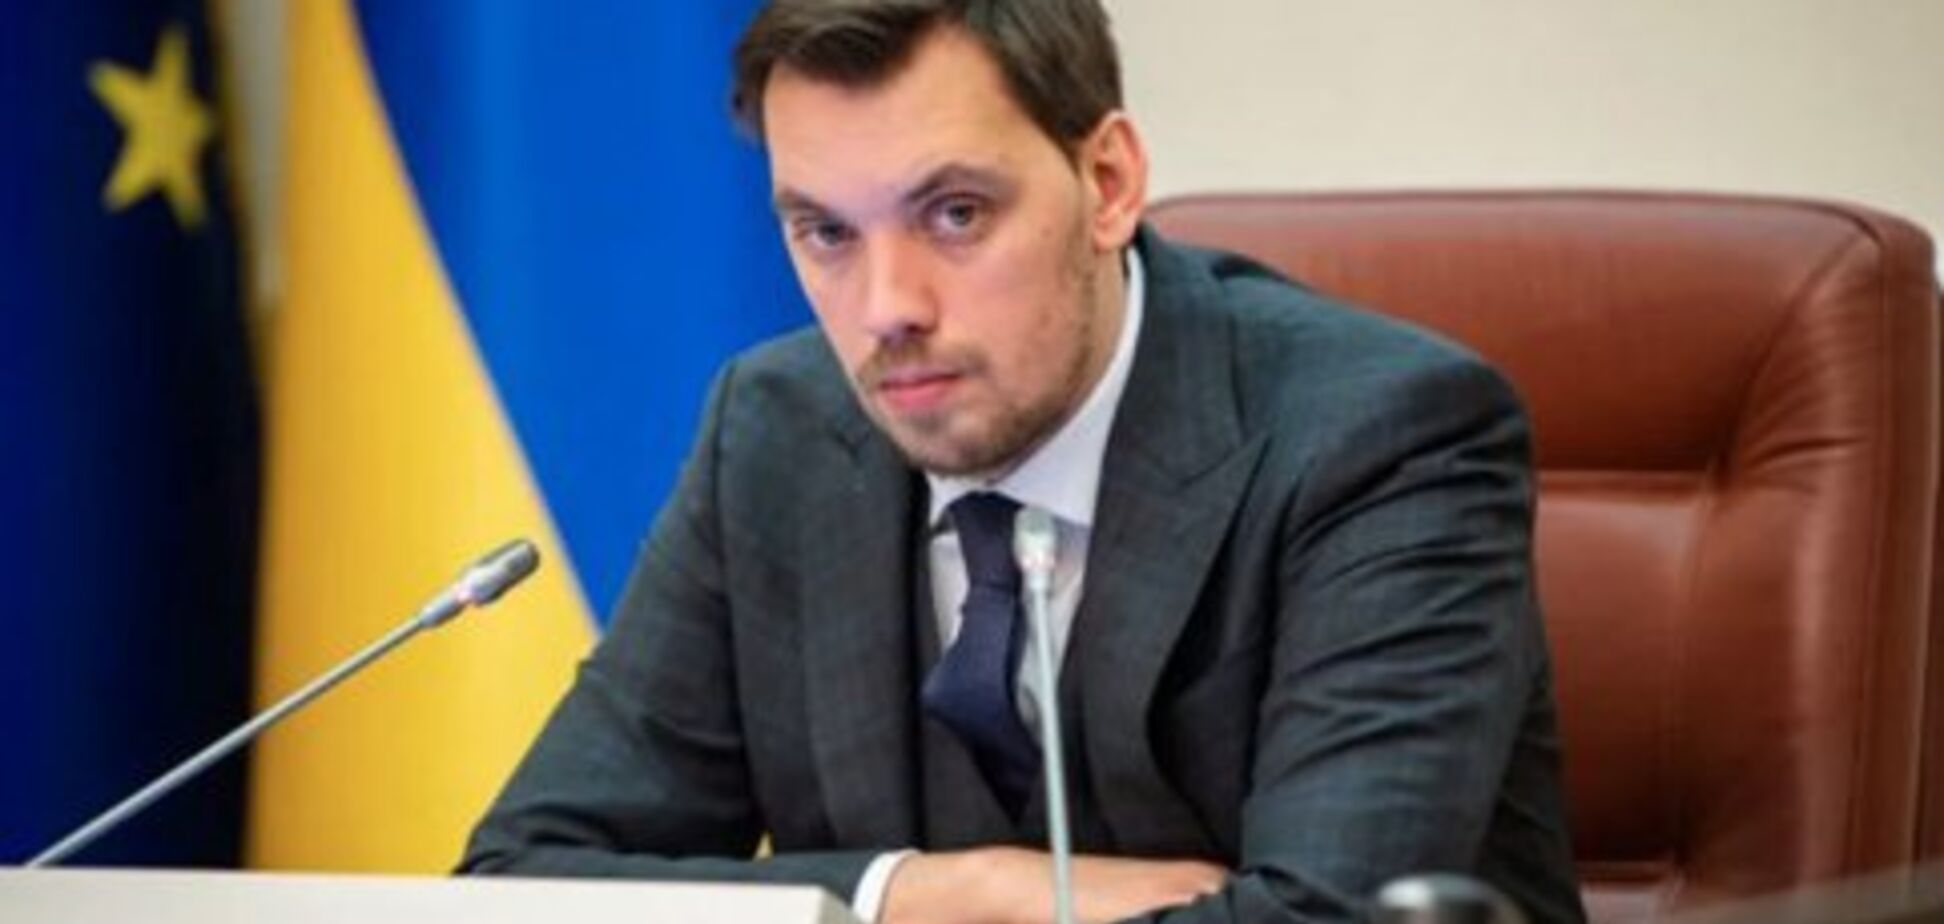 'Политический жест': Разумков объяснил заявление об отставке Гончарука